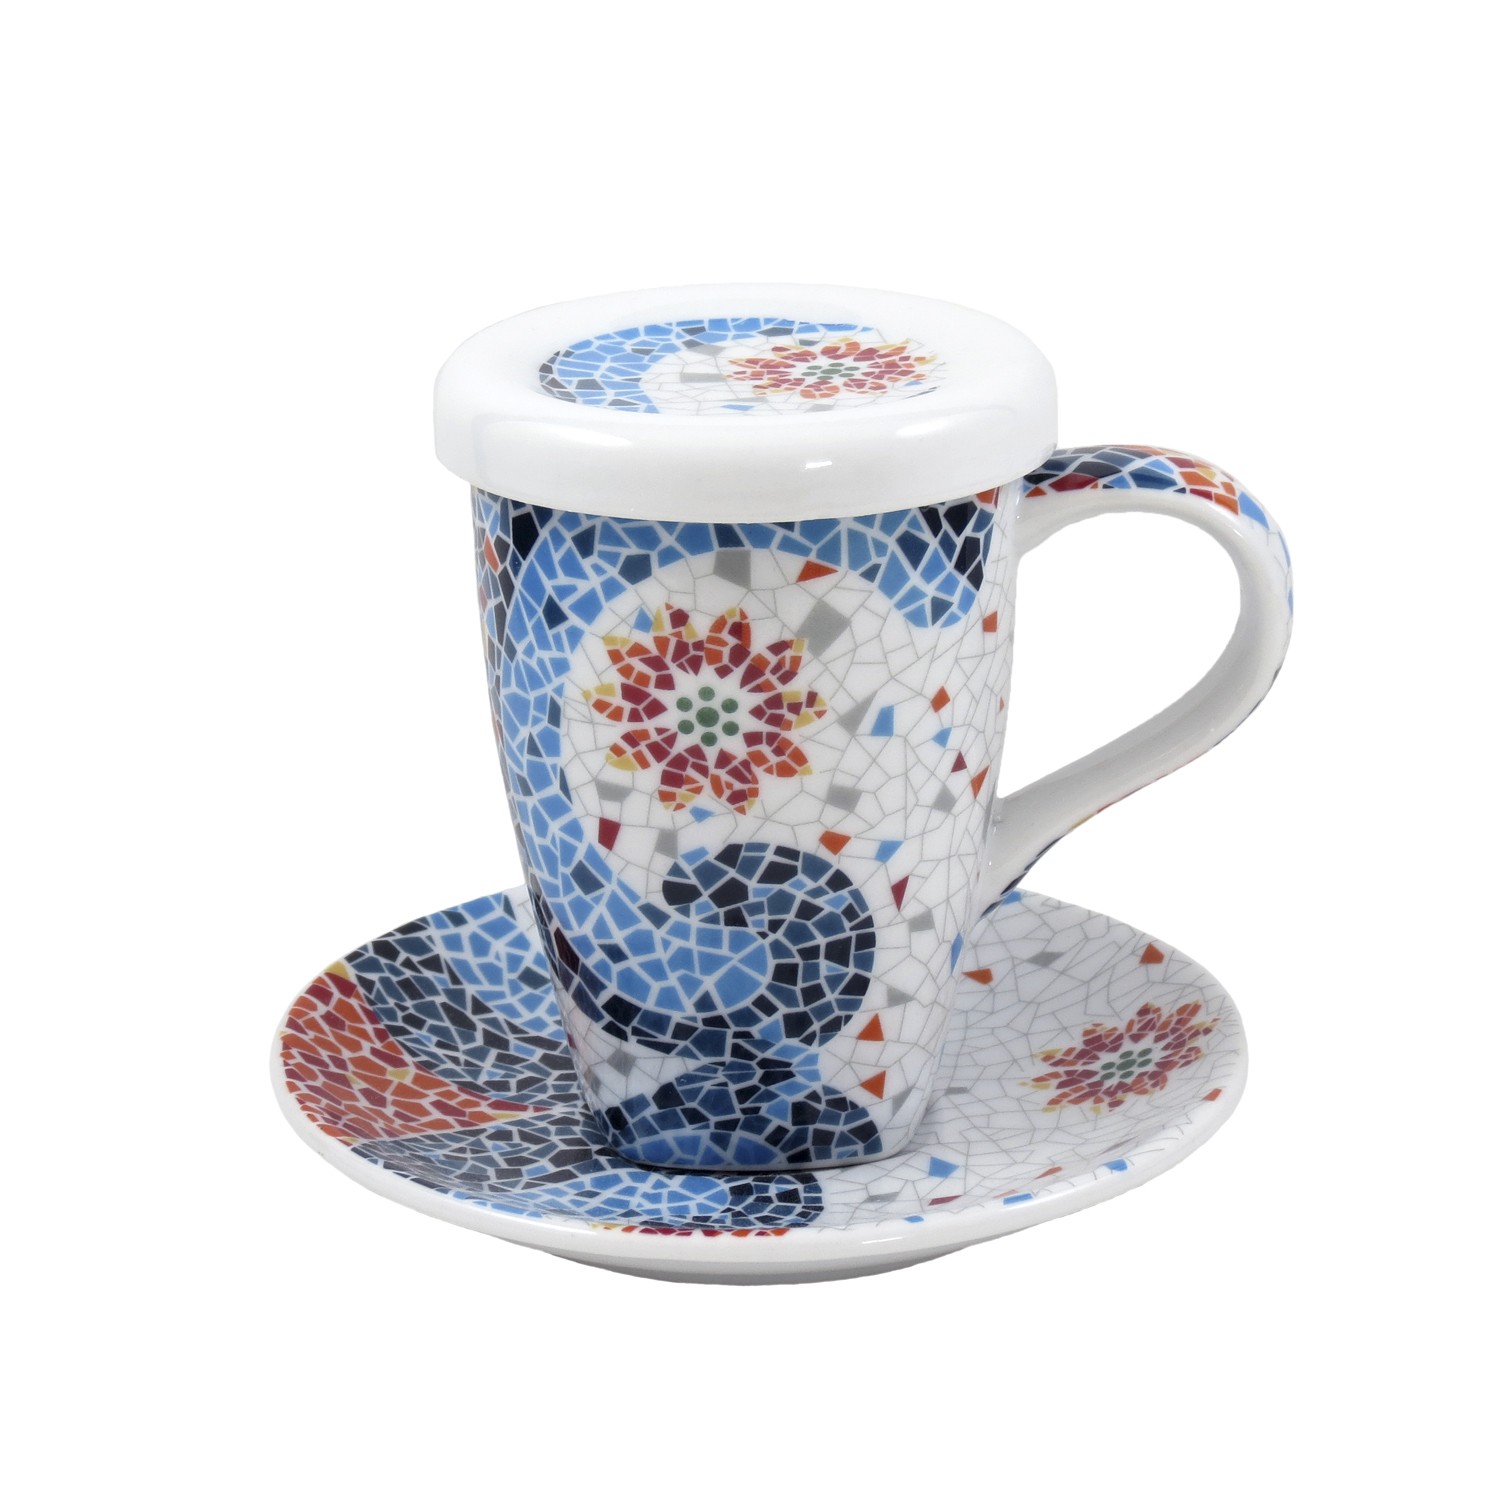 Tisana porcelana con plato y filtro diseño mandala colores mosaico